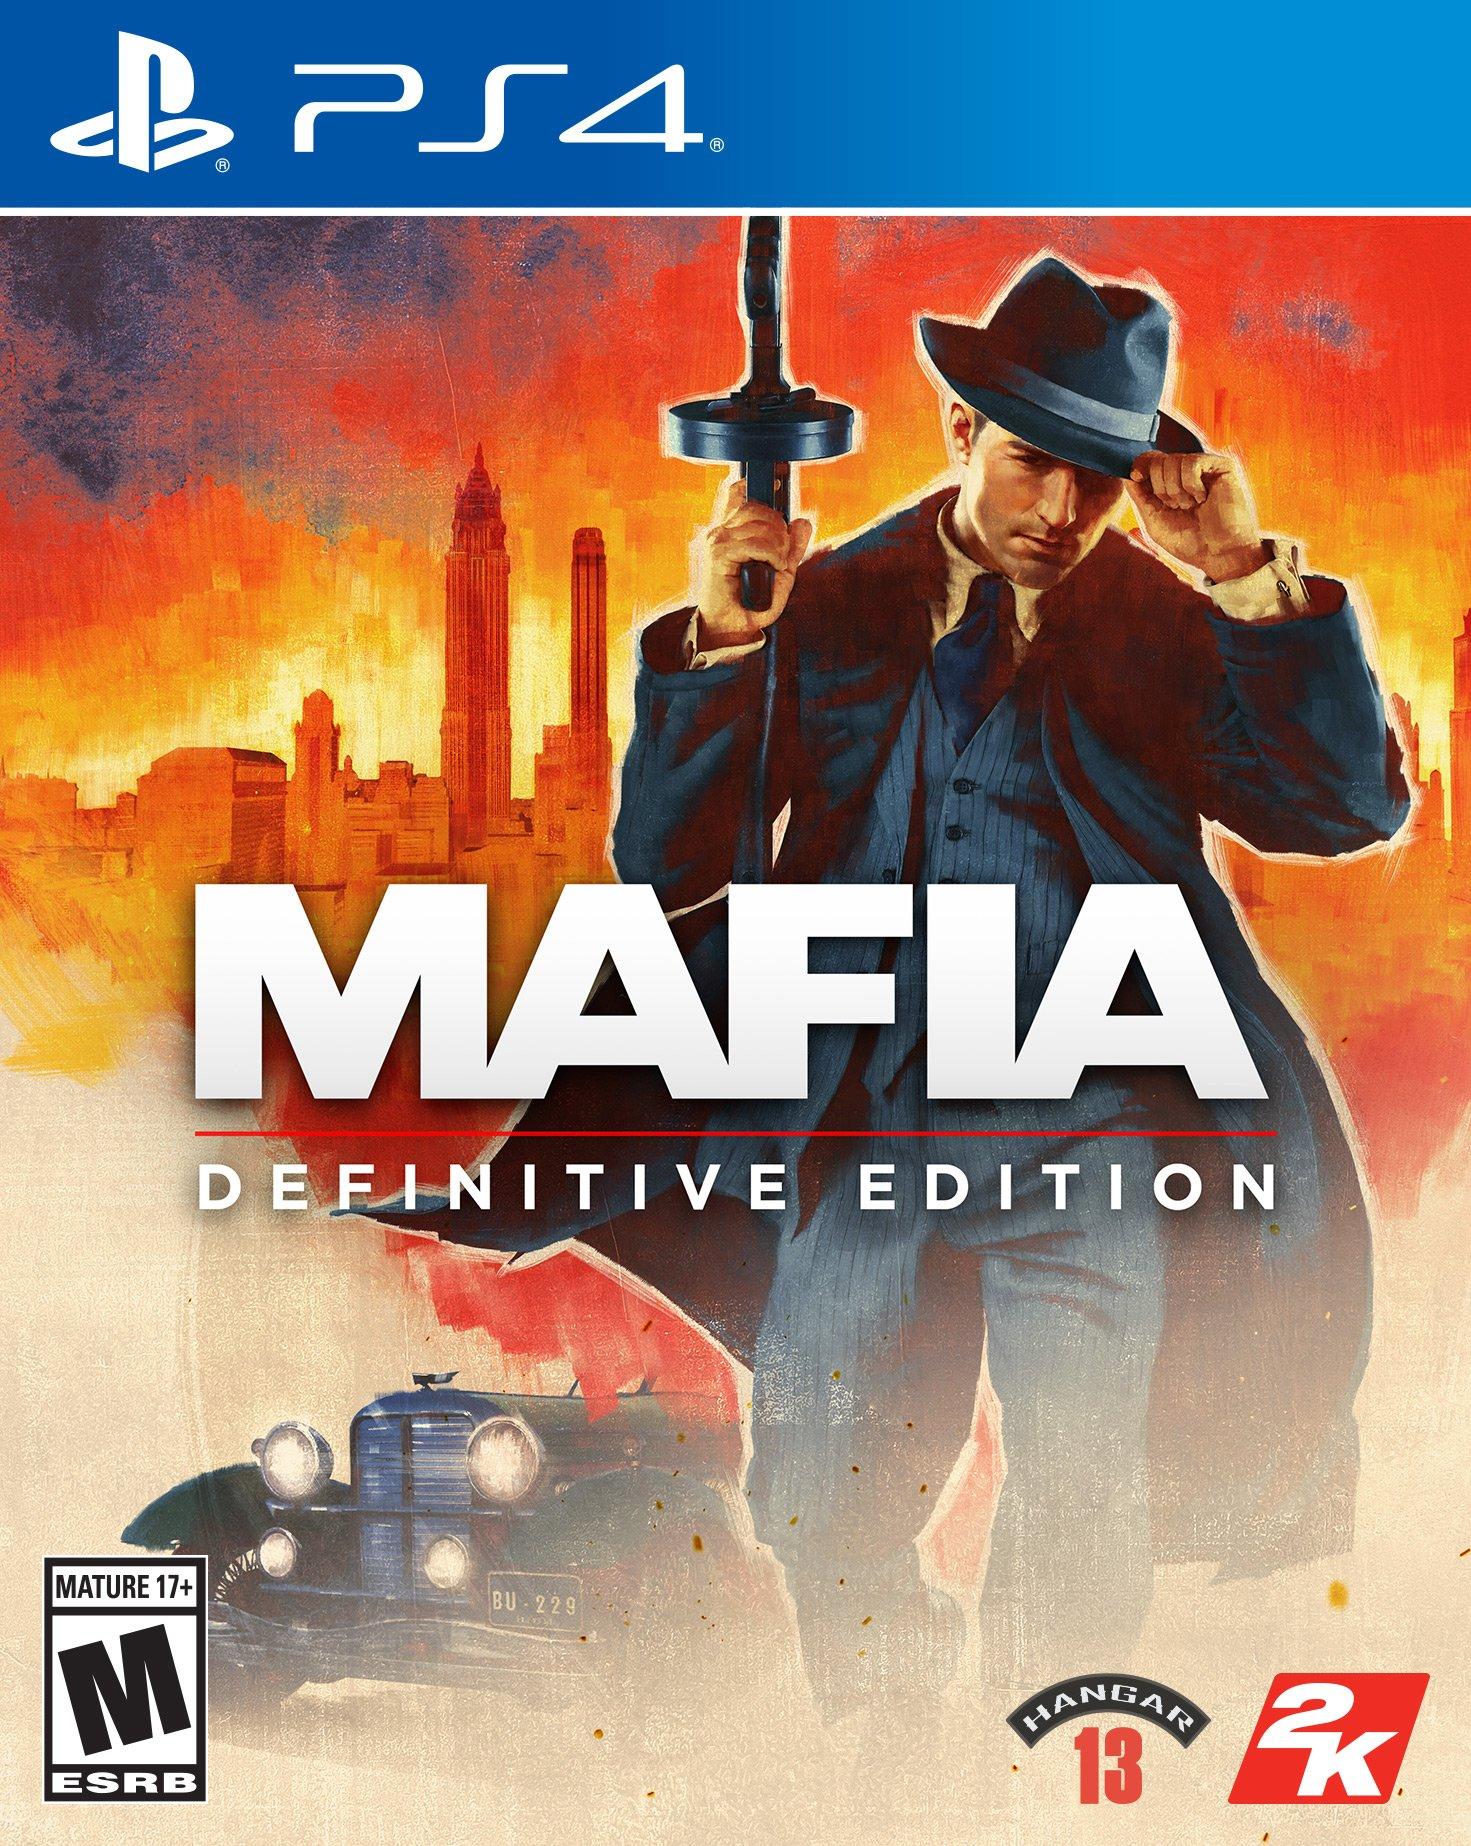  Mafia III Deluxe Edition (PS4) : Video Games